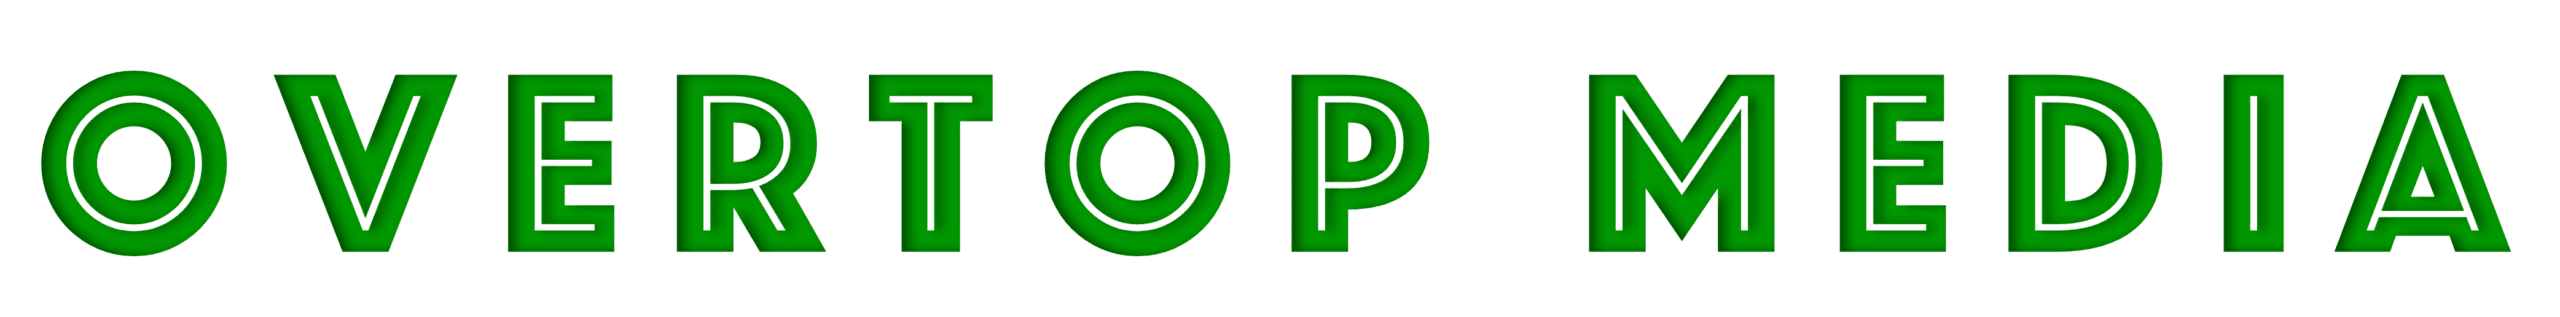 Overtop Media Logo